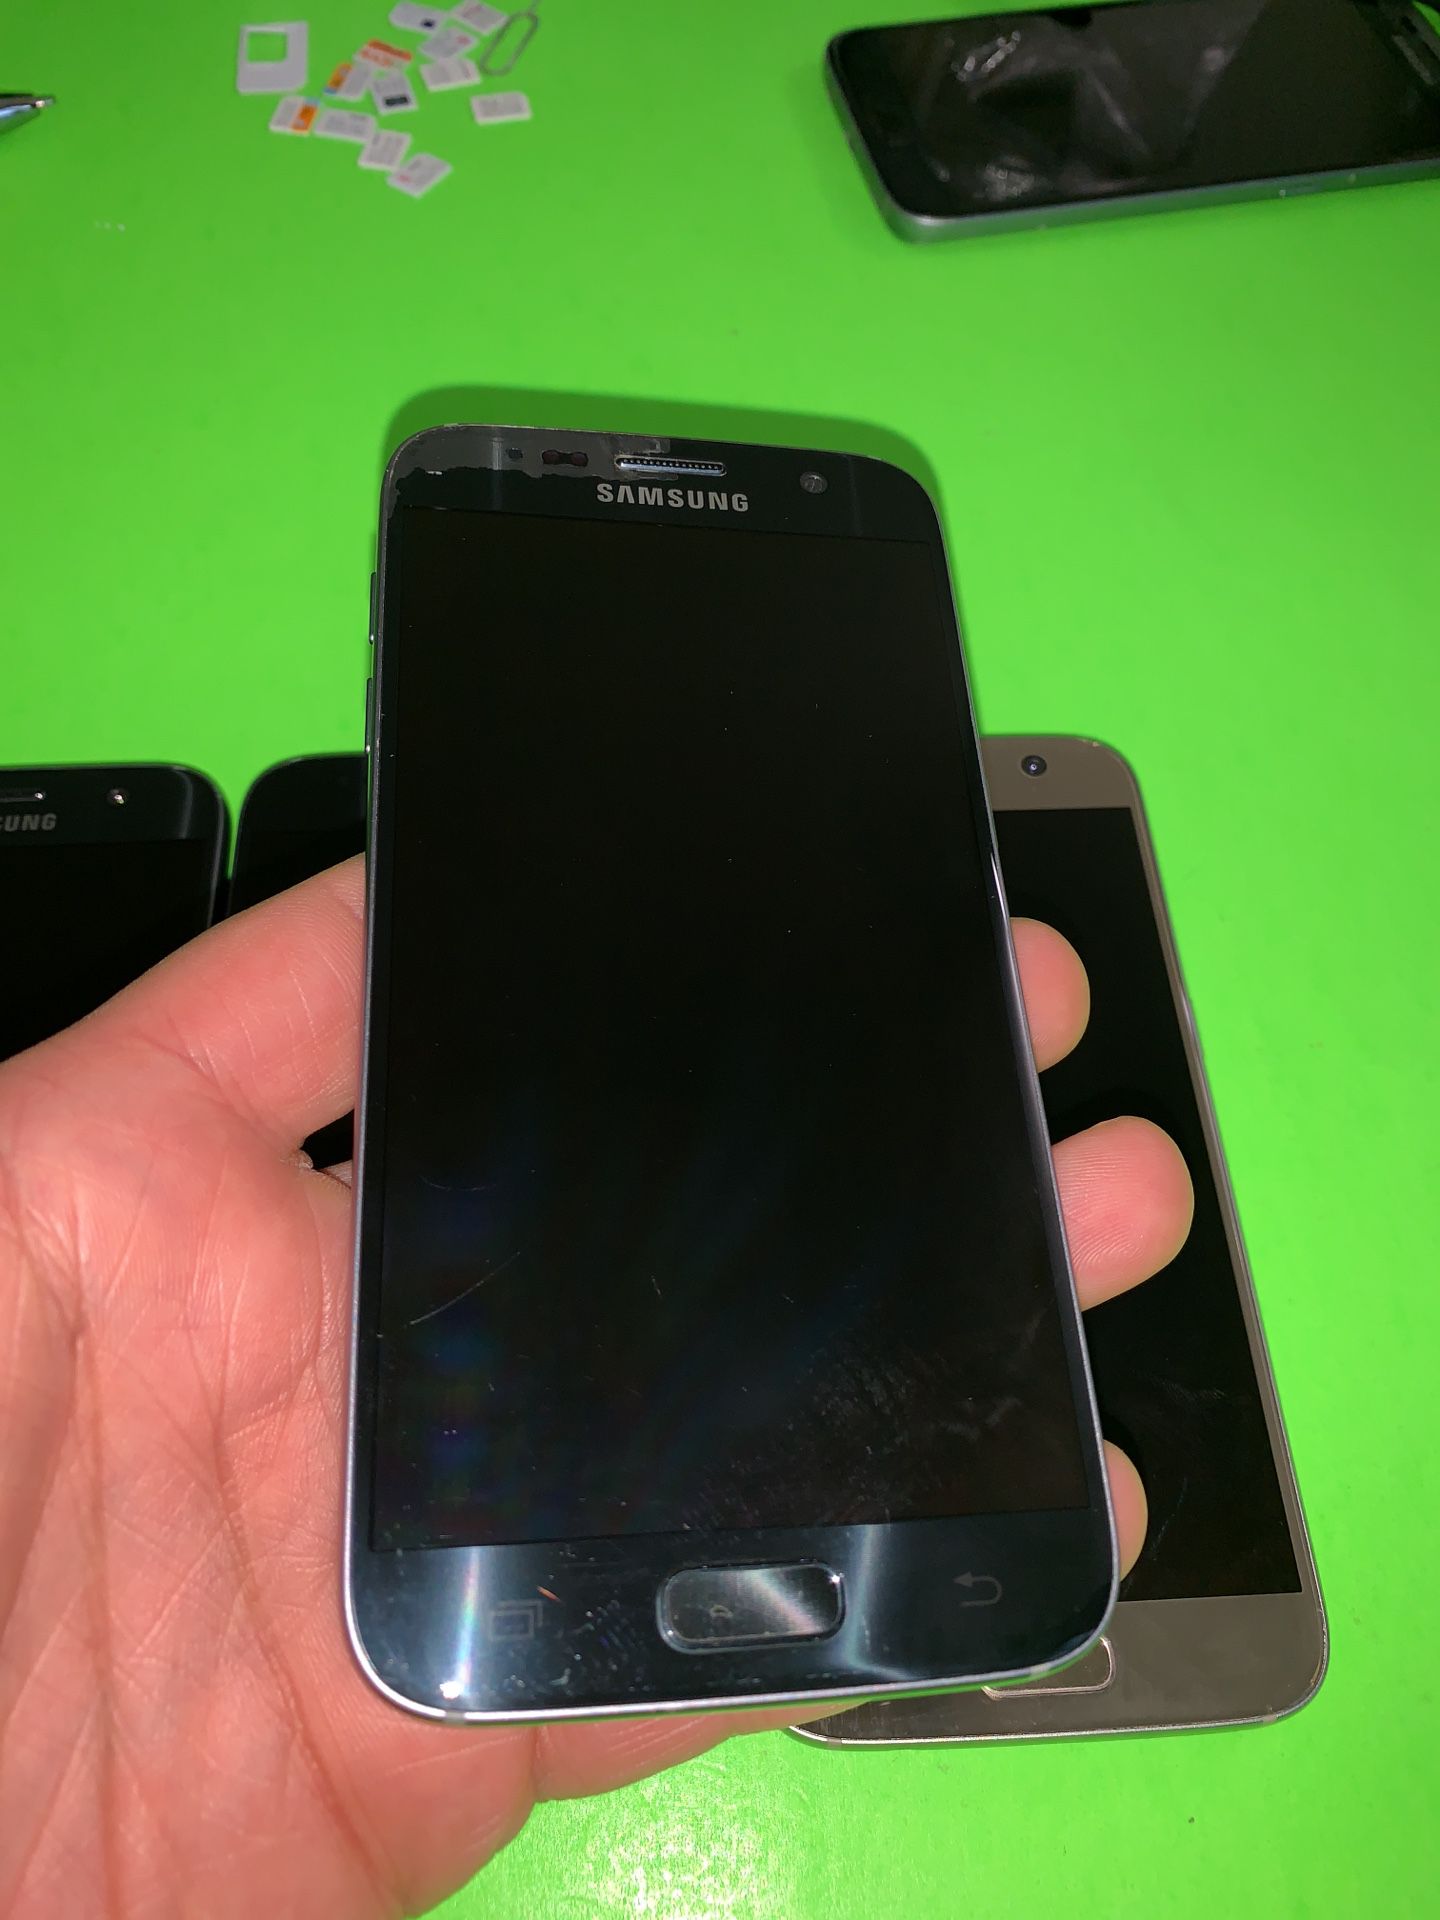 Samsung Galaxy s7 32gb GSM unlocked